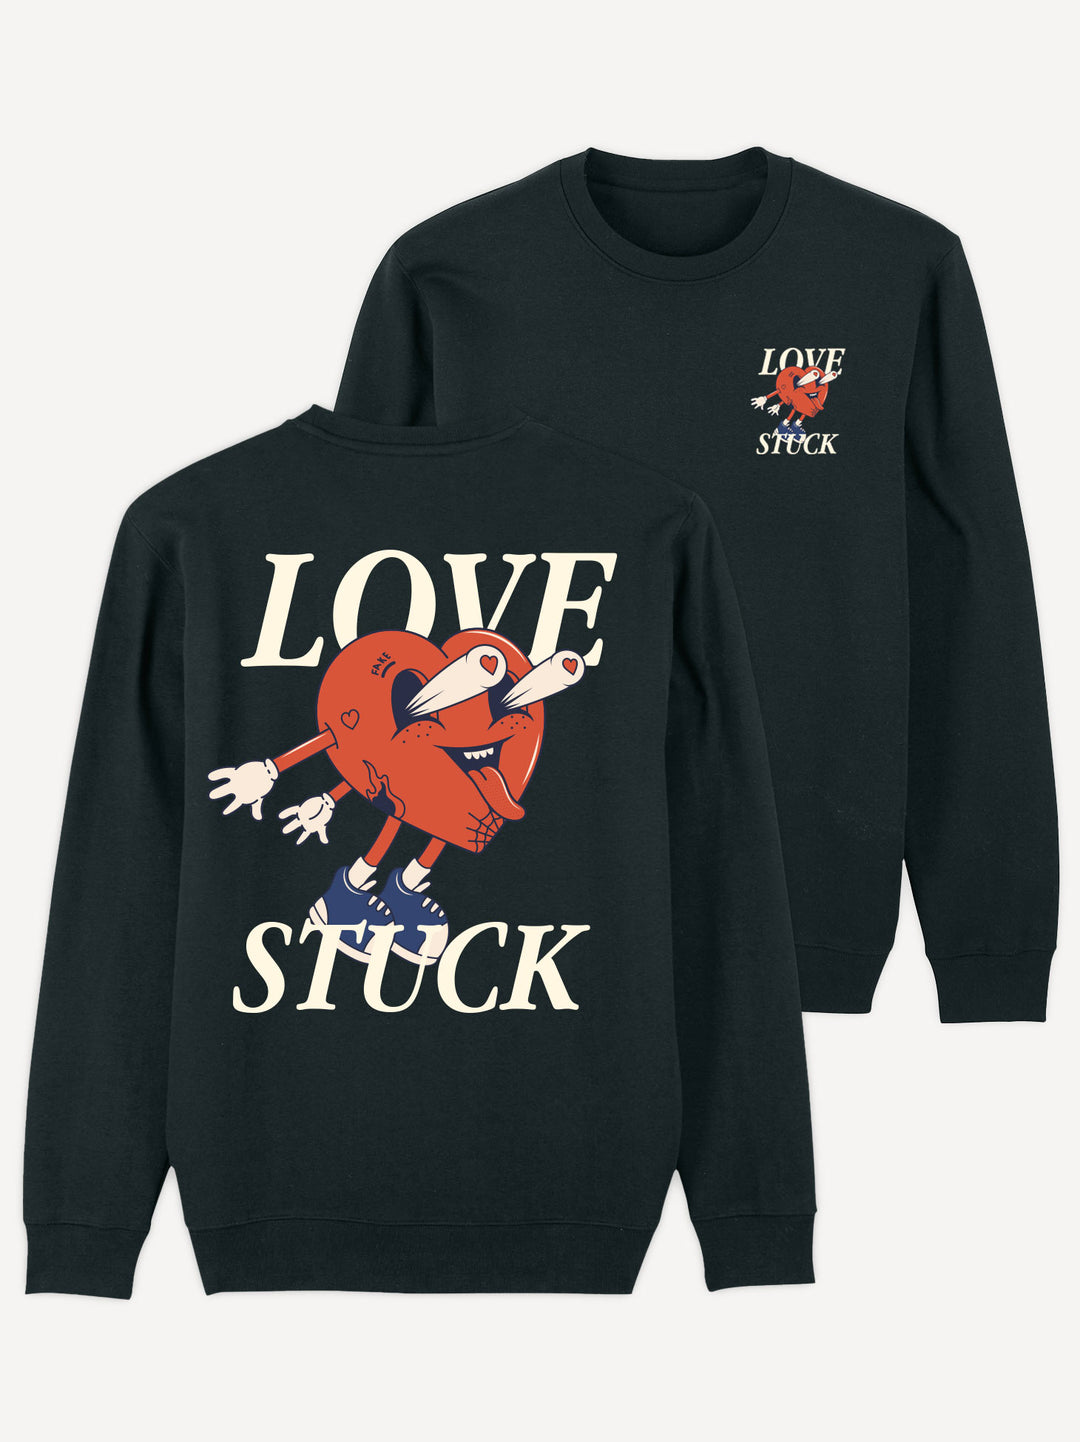 Love Stuck Sweatshirt